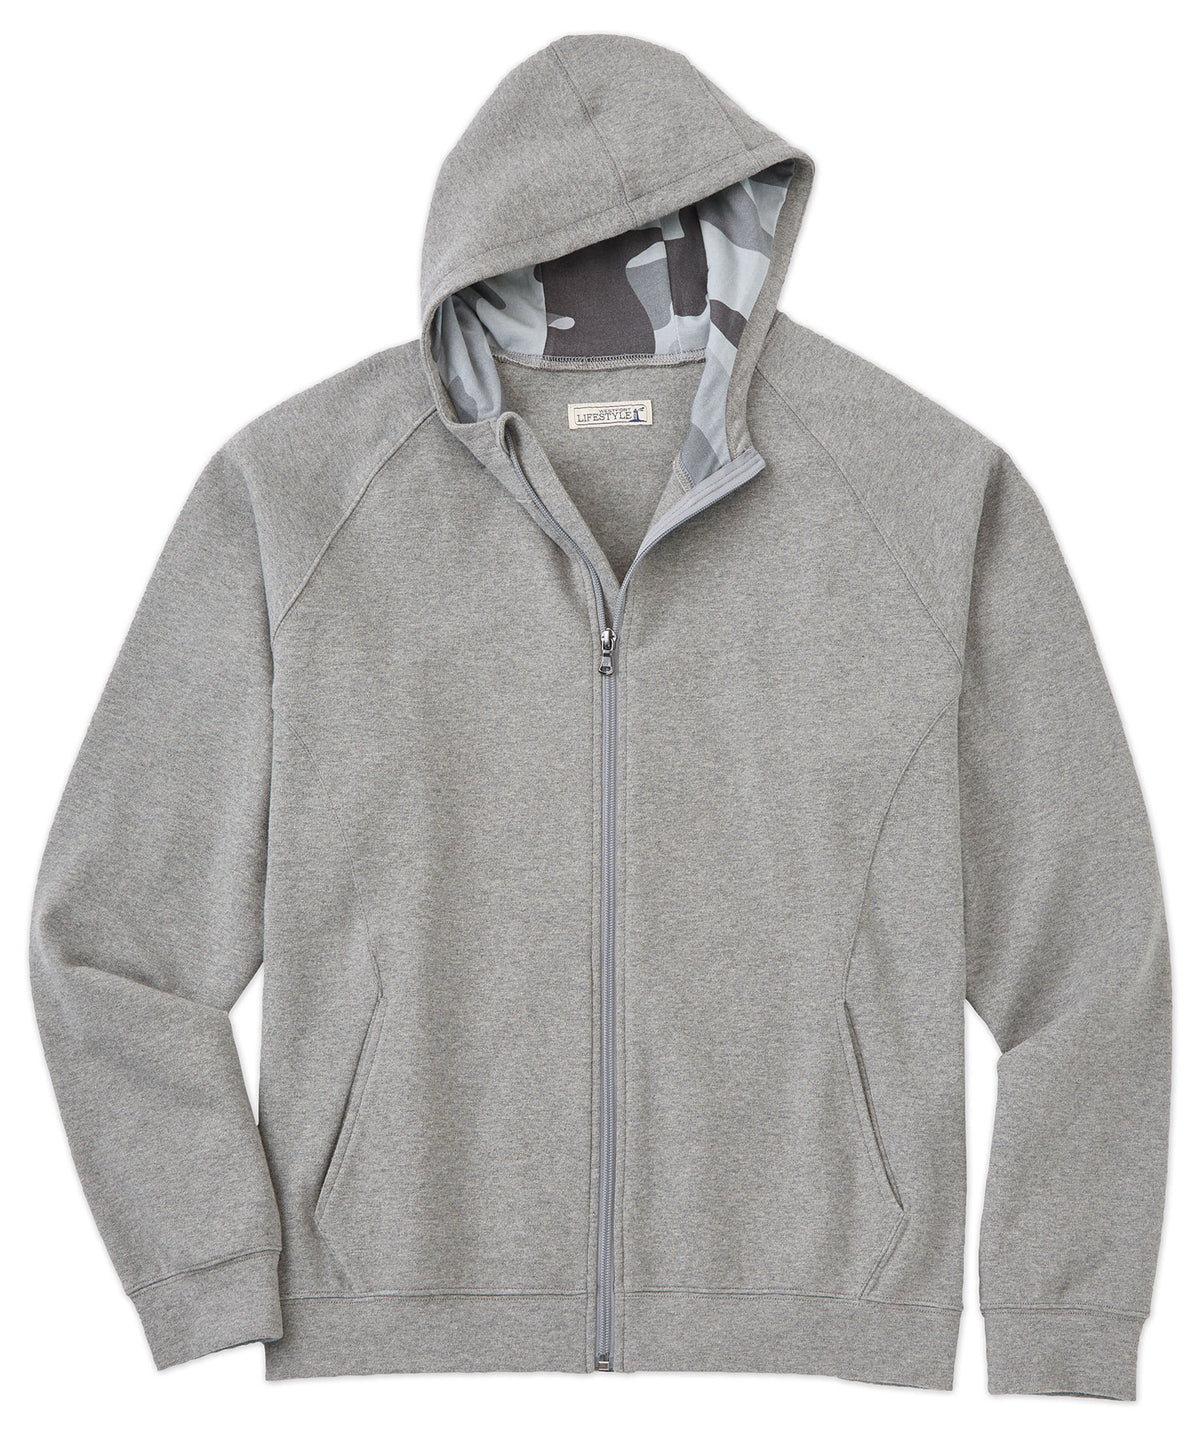 Westport Lifestyle Luxe Fleece Full Zip Hooded Jacket, Big & Tall